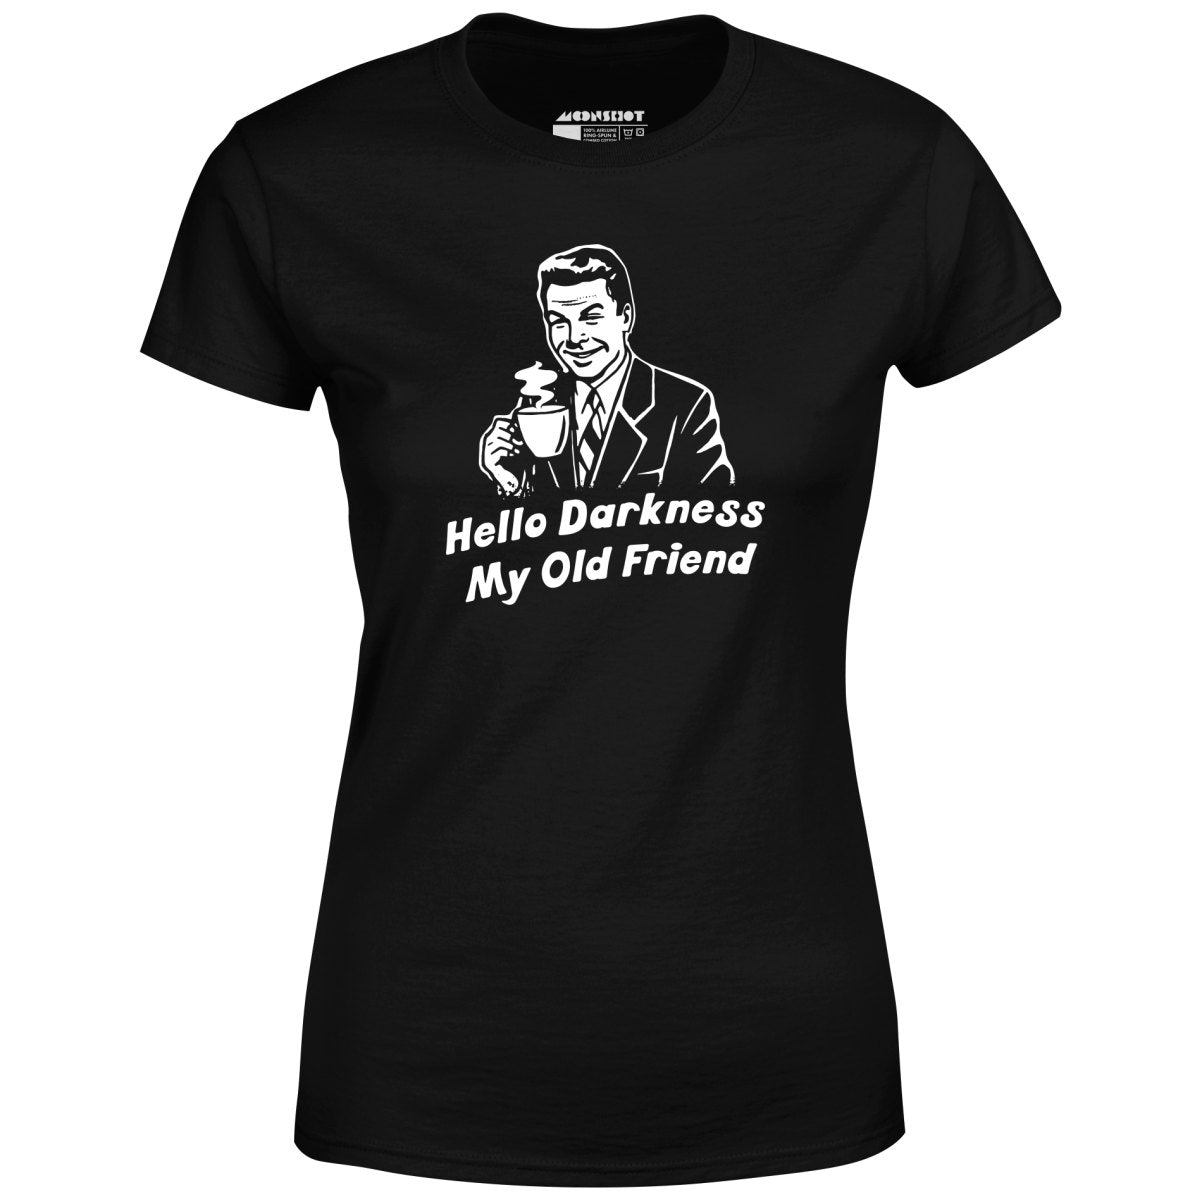 Hello Darkness My Old Friend - Women's T-Shirt